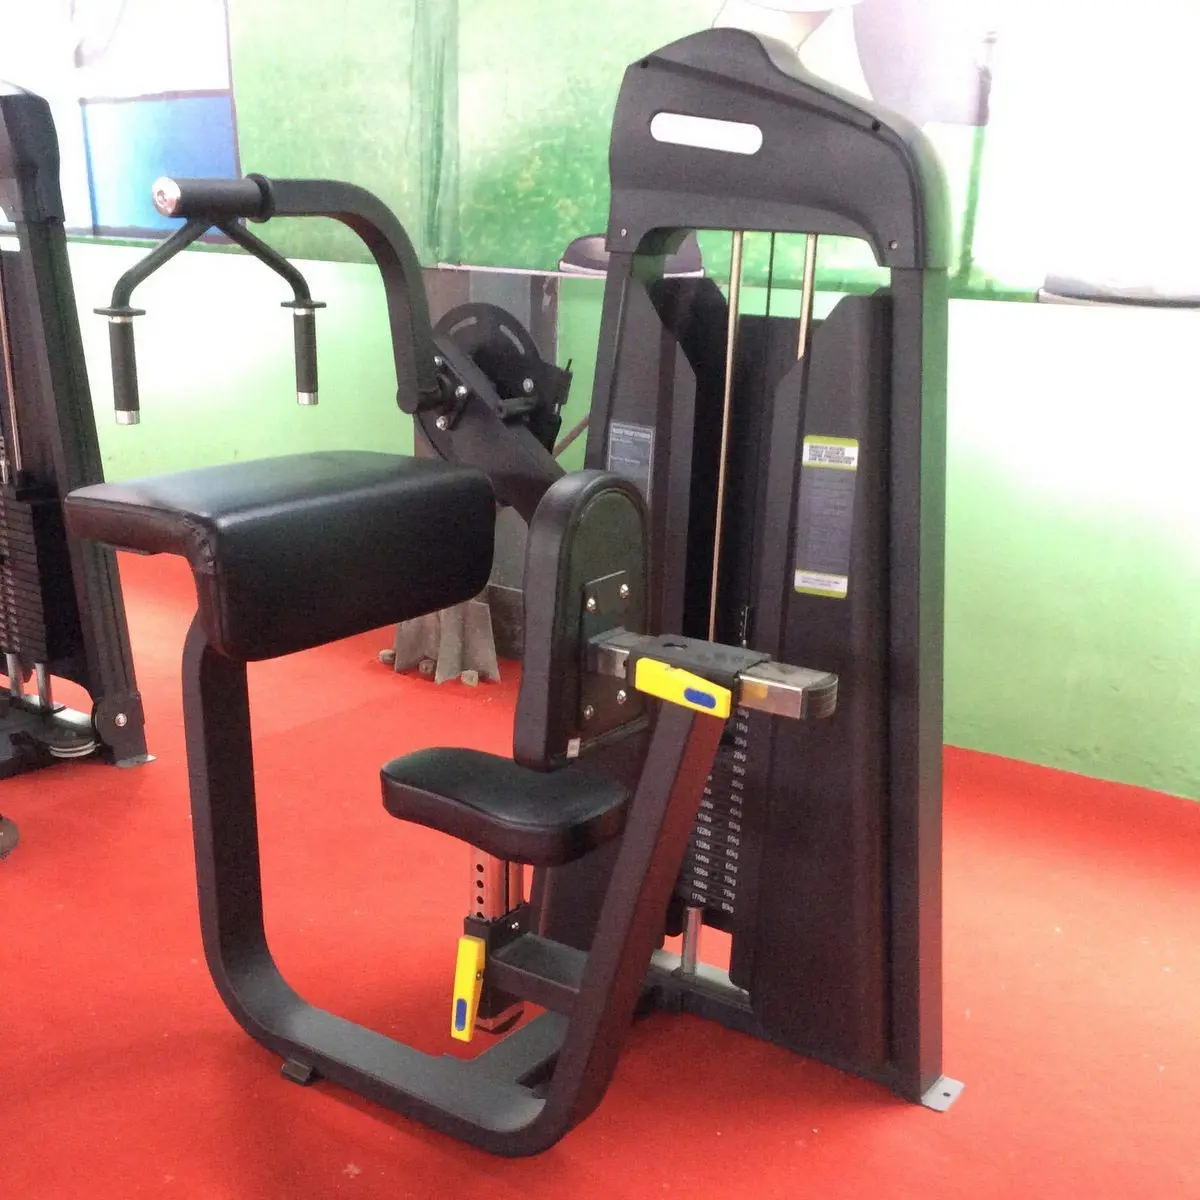 معدات اللياقة البدنية التجارية لممارسة التمارين الرياضية في الصالة الرياضية آلة التدريب على ارتداد العظام ثلاثية القوائم والتمديد بجلوس